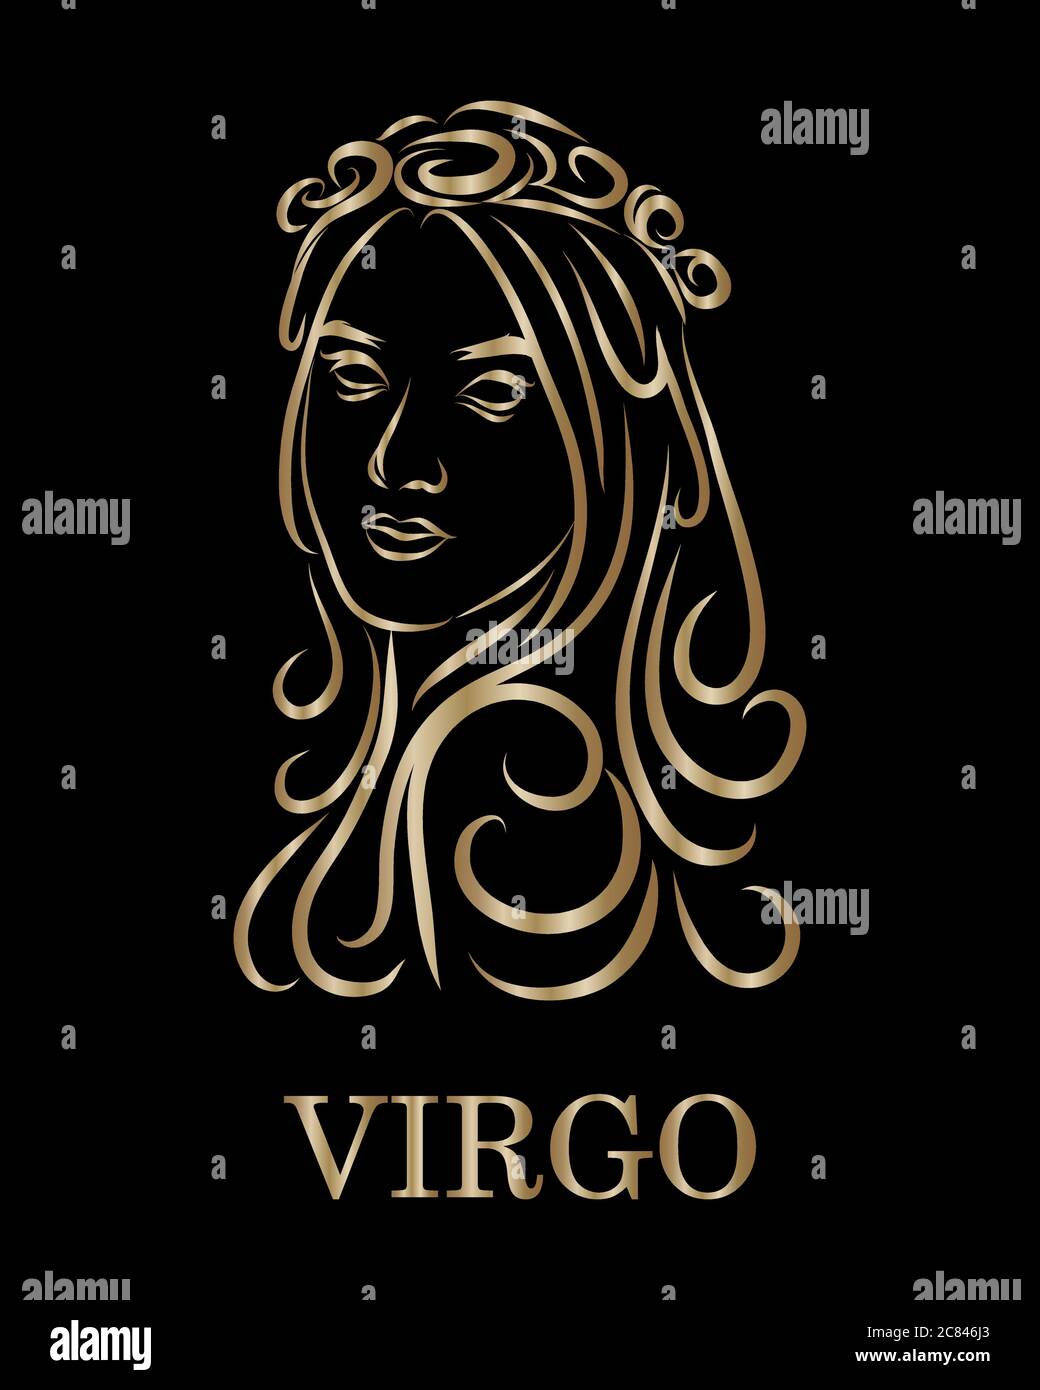 Línea de oro vector logo de una mujer. Es signo del zodiaco de virgo ...